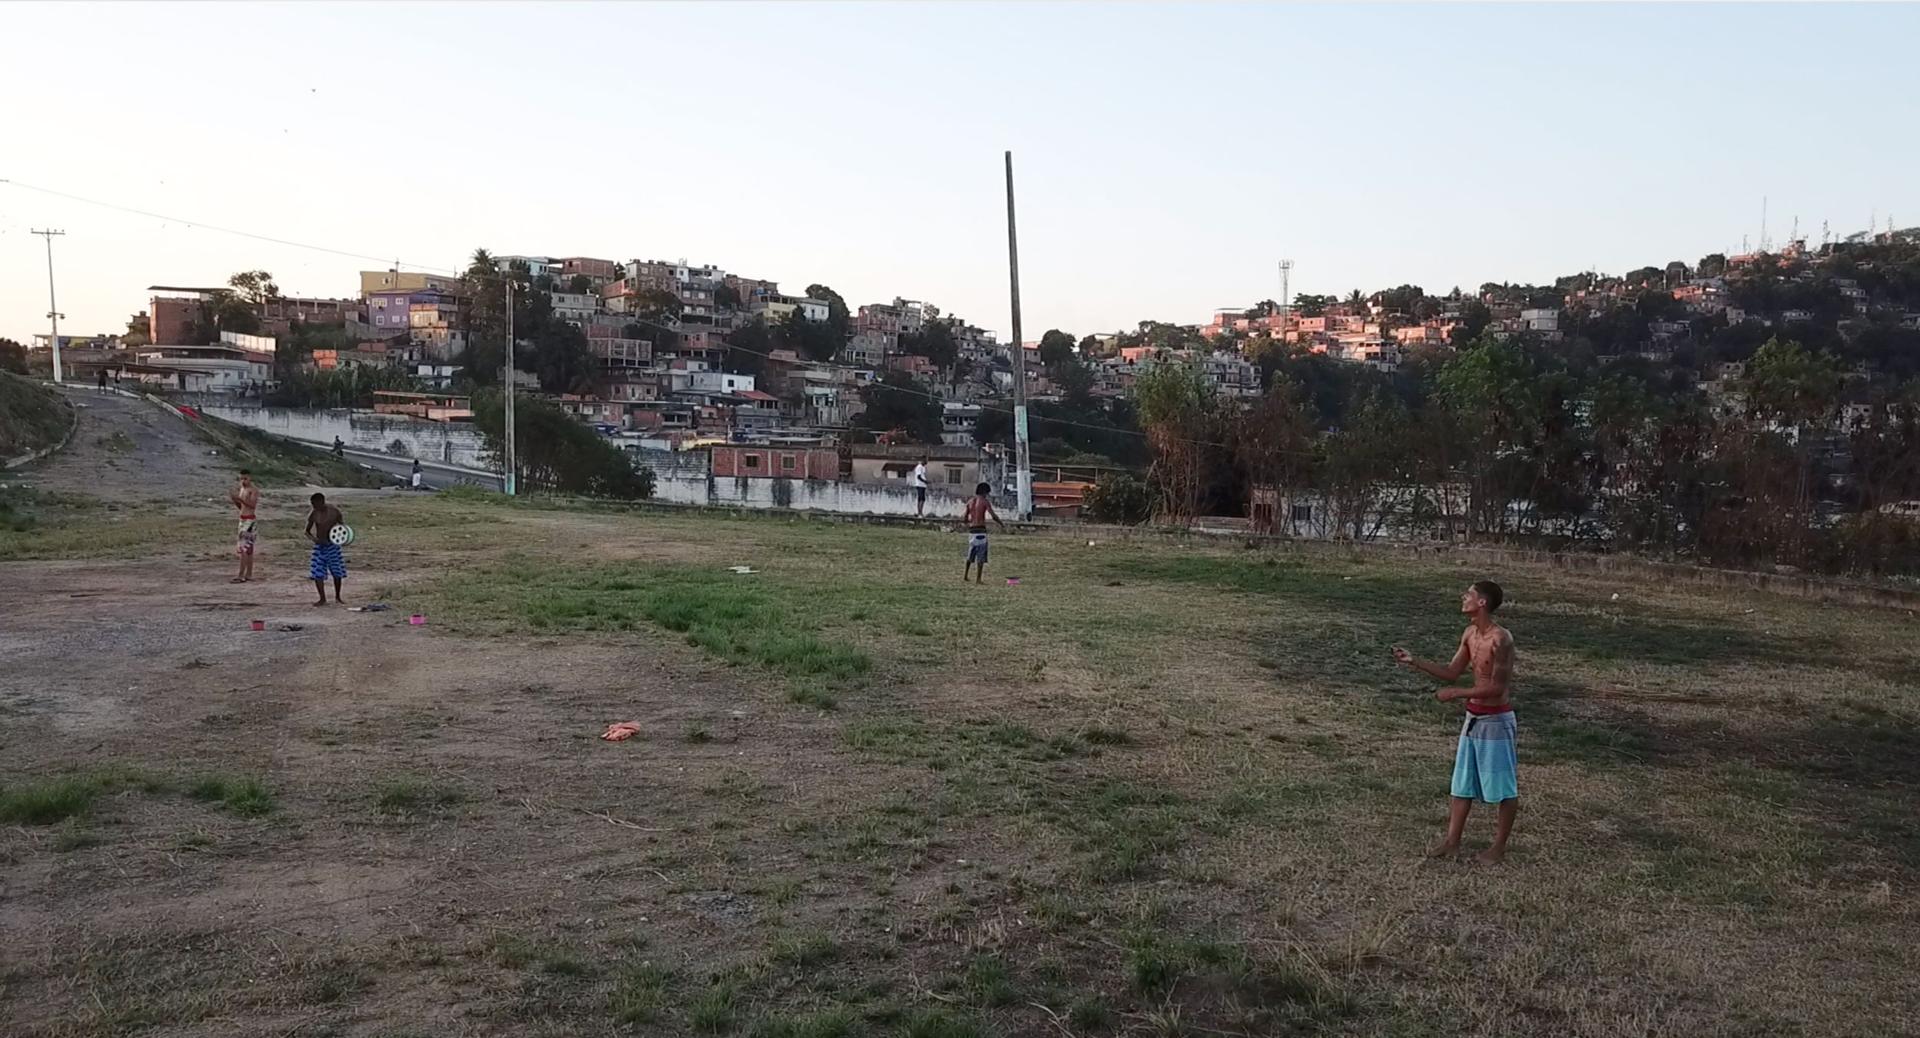 Teenage boys fly kites in an open field in Rio de Janeiro, Brazil.